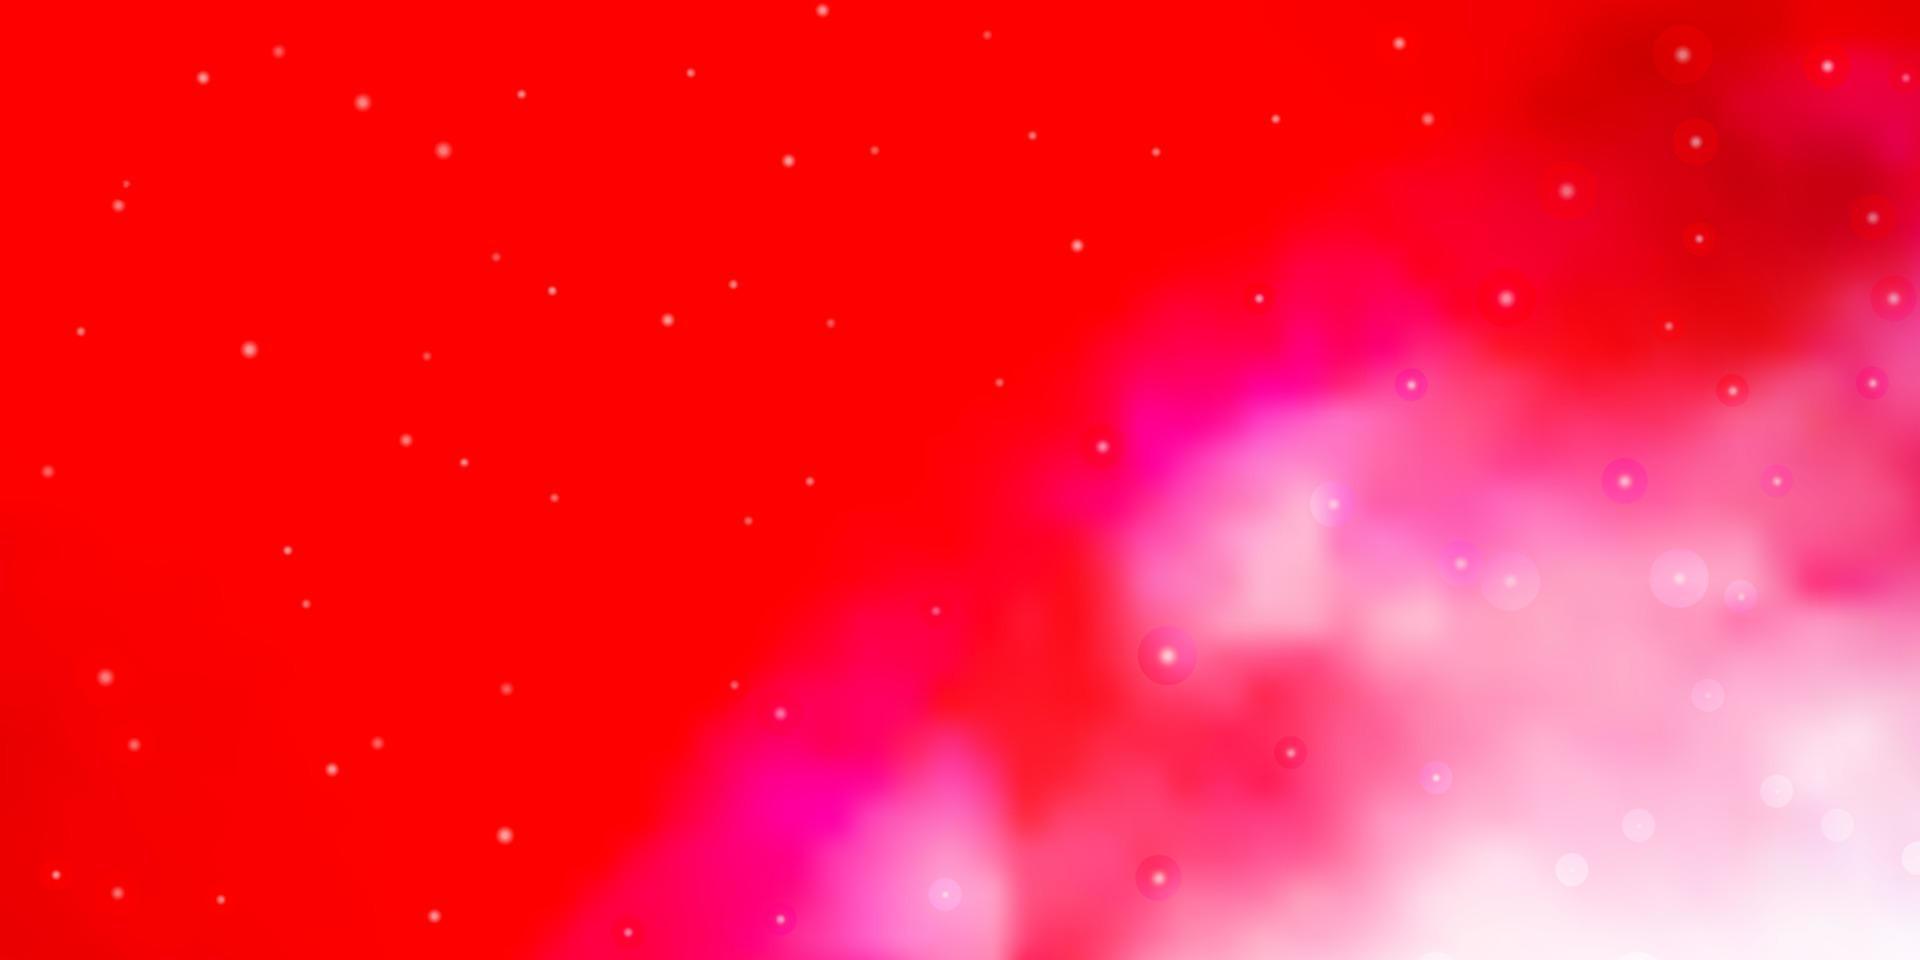 Fondo de vector rojo claro con estrellas pequeñas y grandes.